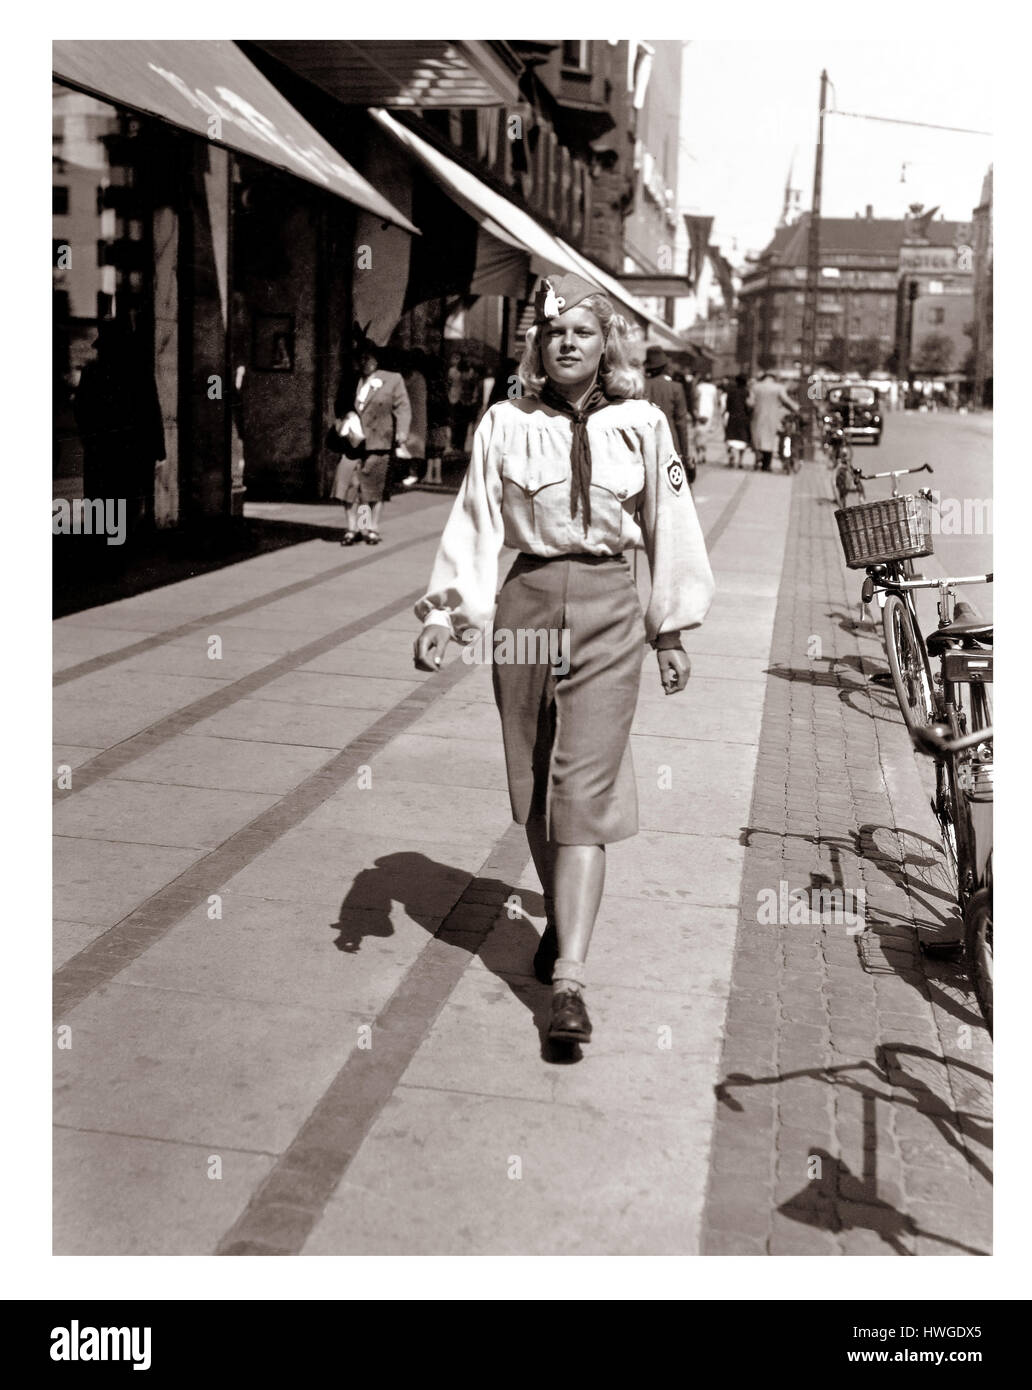 Das blonde Mädchen der Teenage-Partei Dänemarks in den 1930er Jahren ist stolz darauf, in der Uniform der nationalsozialistischen Arbeiterpartei Dänemarks (DNSAP), der größten nationalsozialistischen Partei Dänemarks vor und während des Zweiten Weltkriegs, zu Fuß zu gehen. 2. Weltkrieg Stockfoto